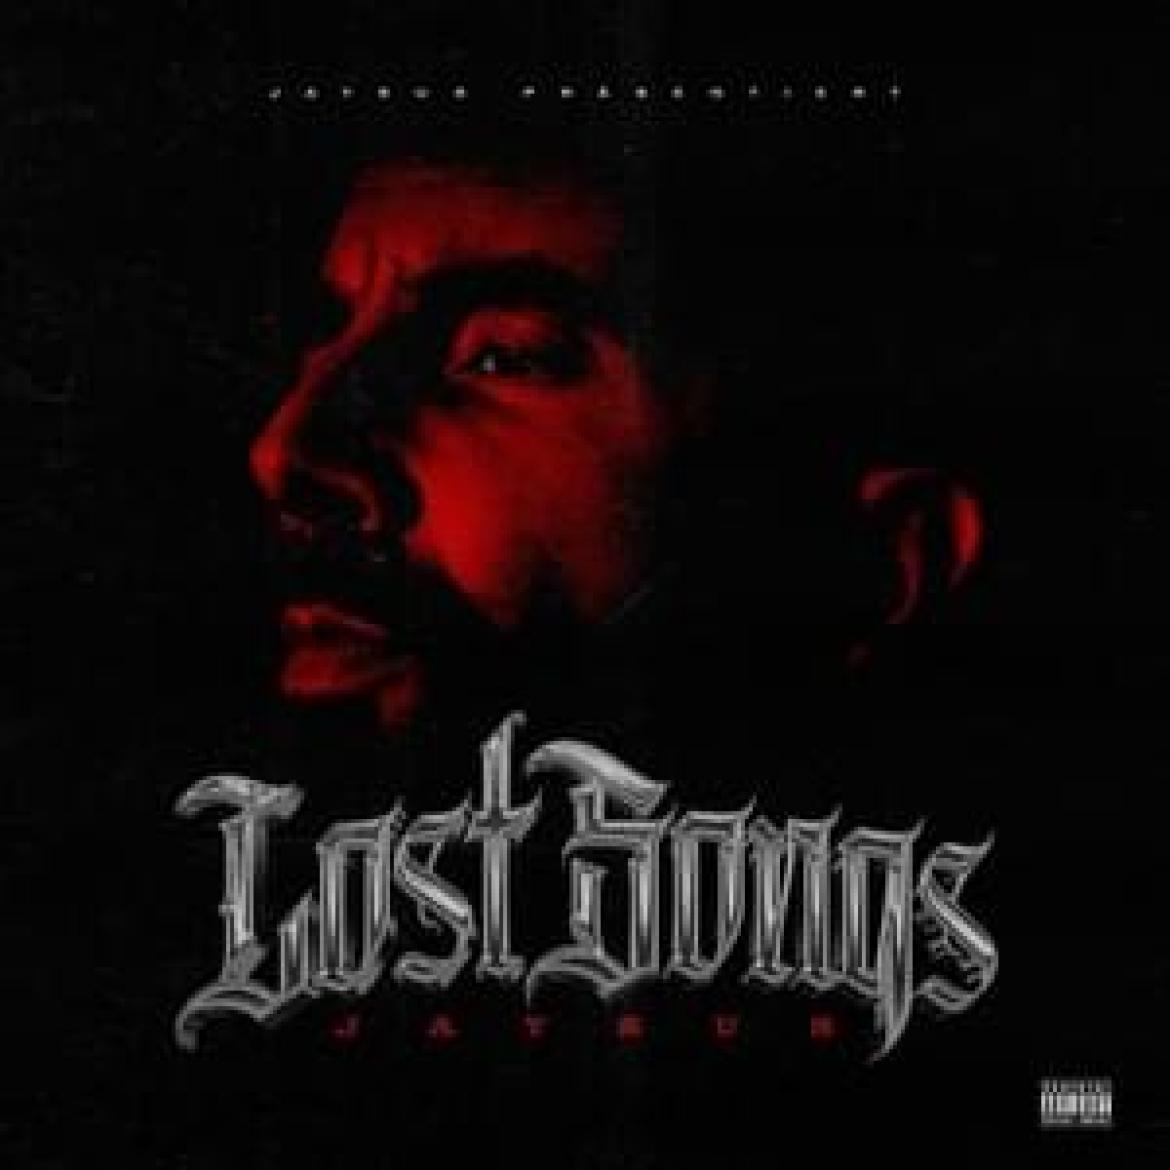 Cover zu Jaysus' neuem Album "Lost Songs"